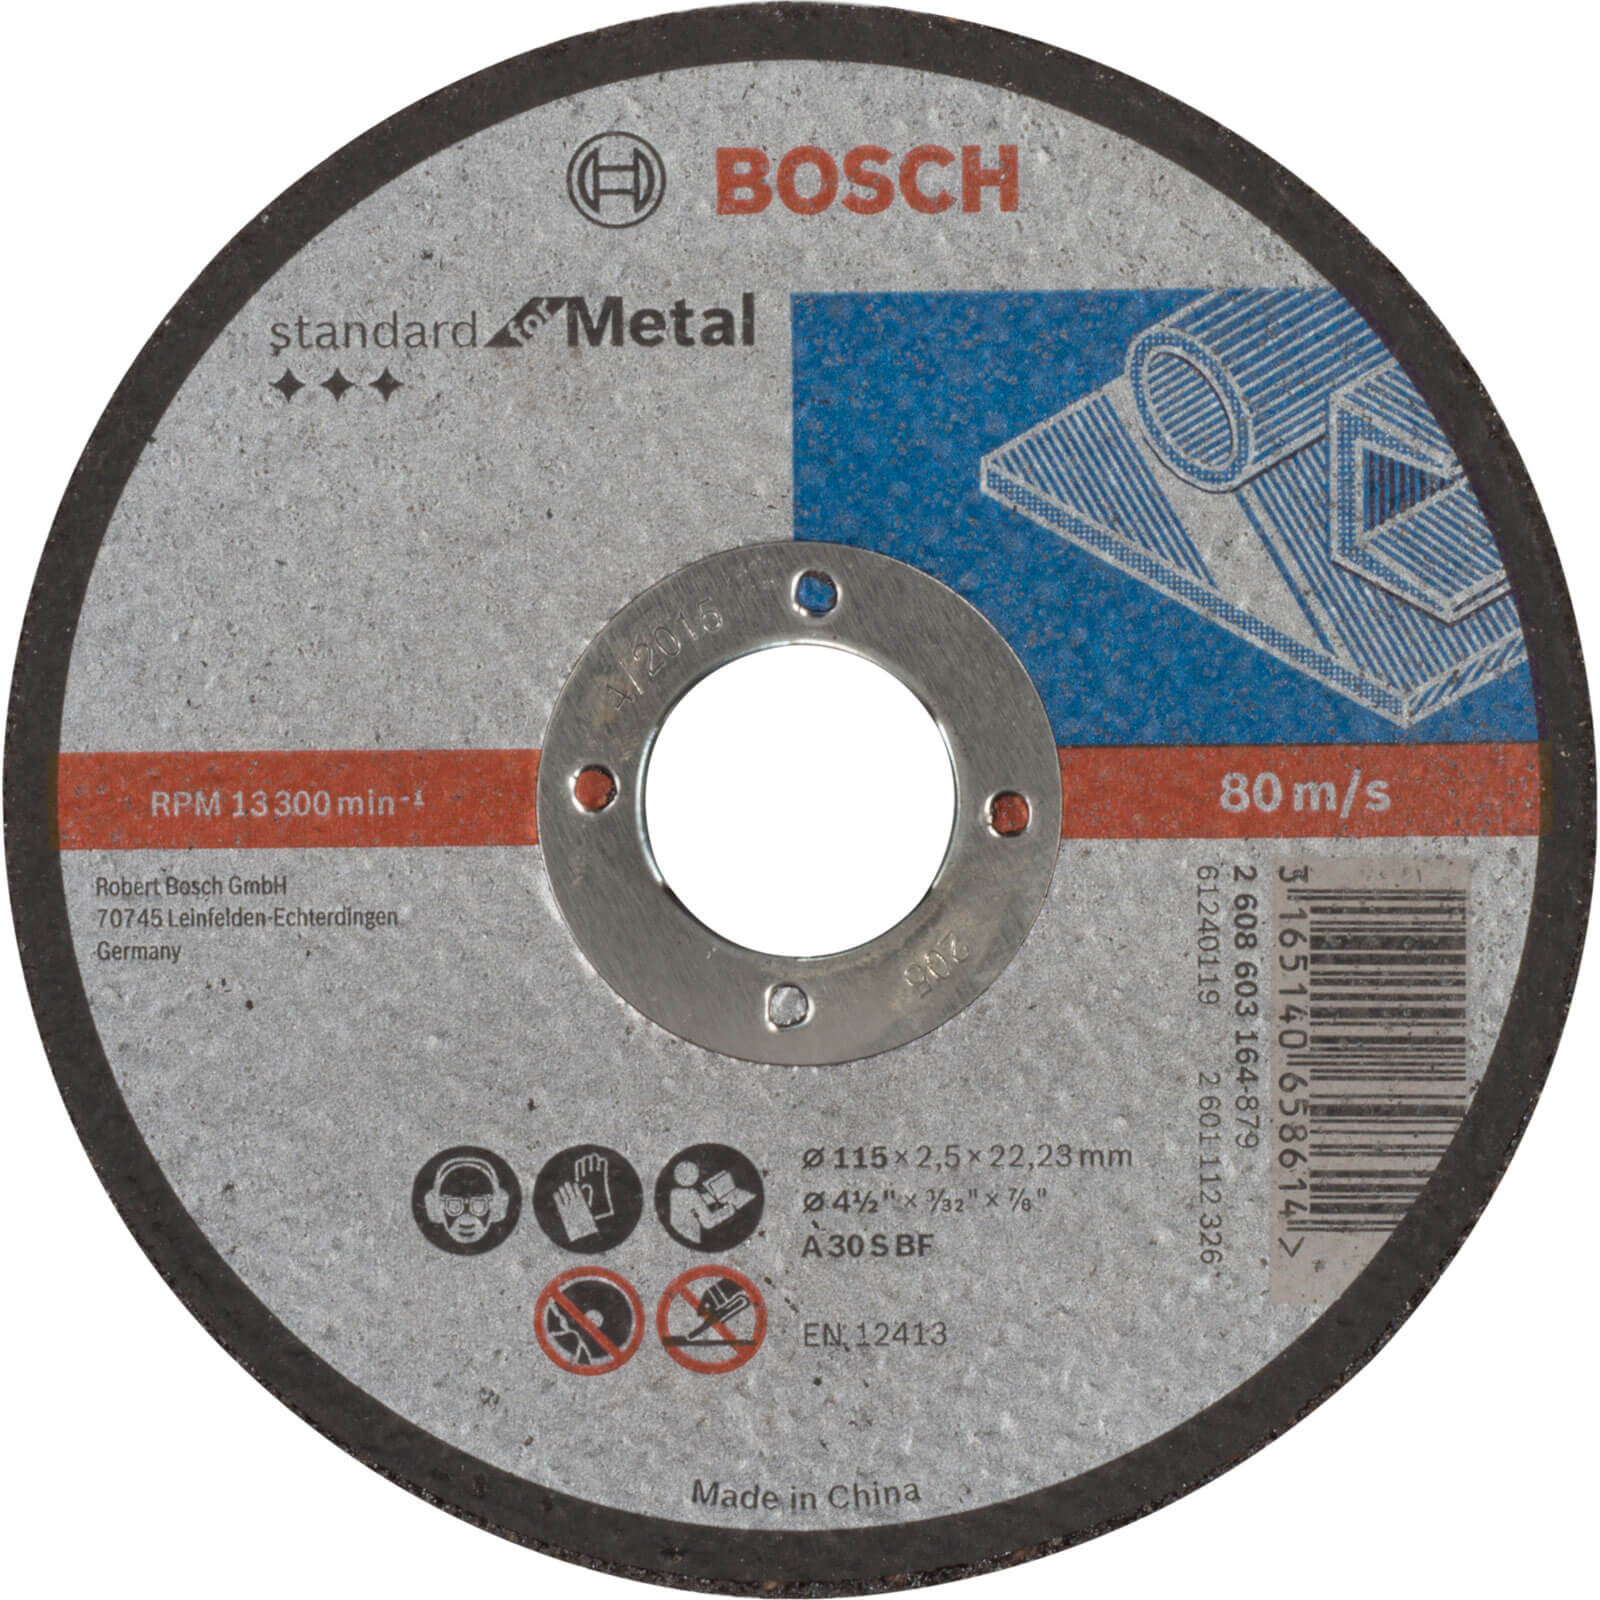 Photo of Bosch Standard Metal Cutting Disc 115mm 2.5mm 22mm